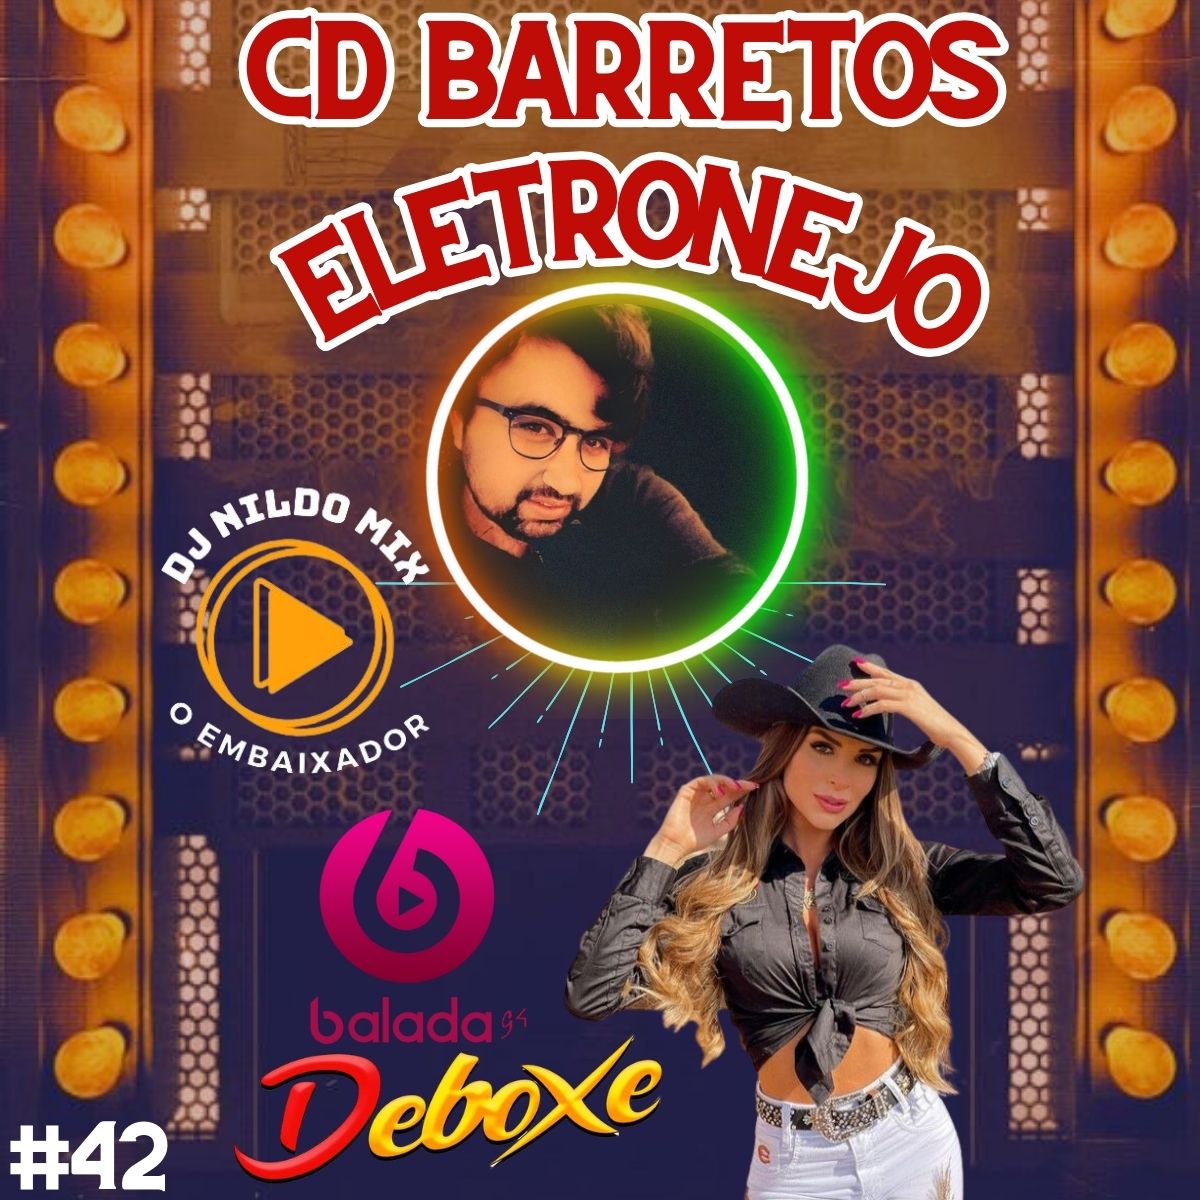 CD BARRETOS ELETRONEJO (DJ NILDO MIX O EMBAIXADOR) #42